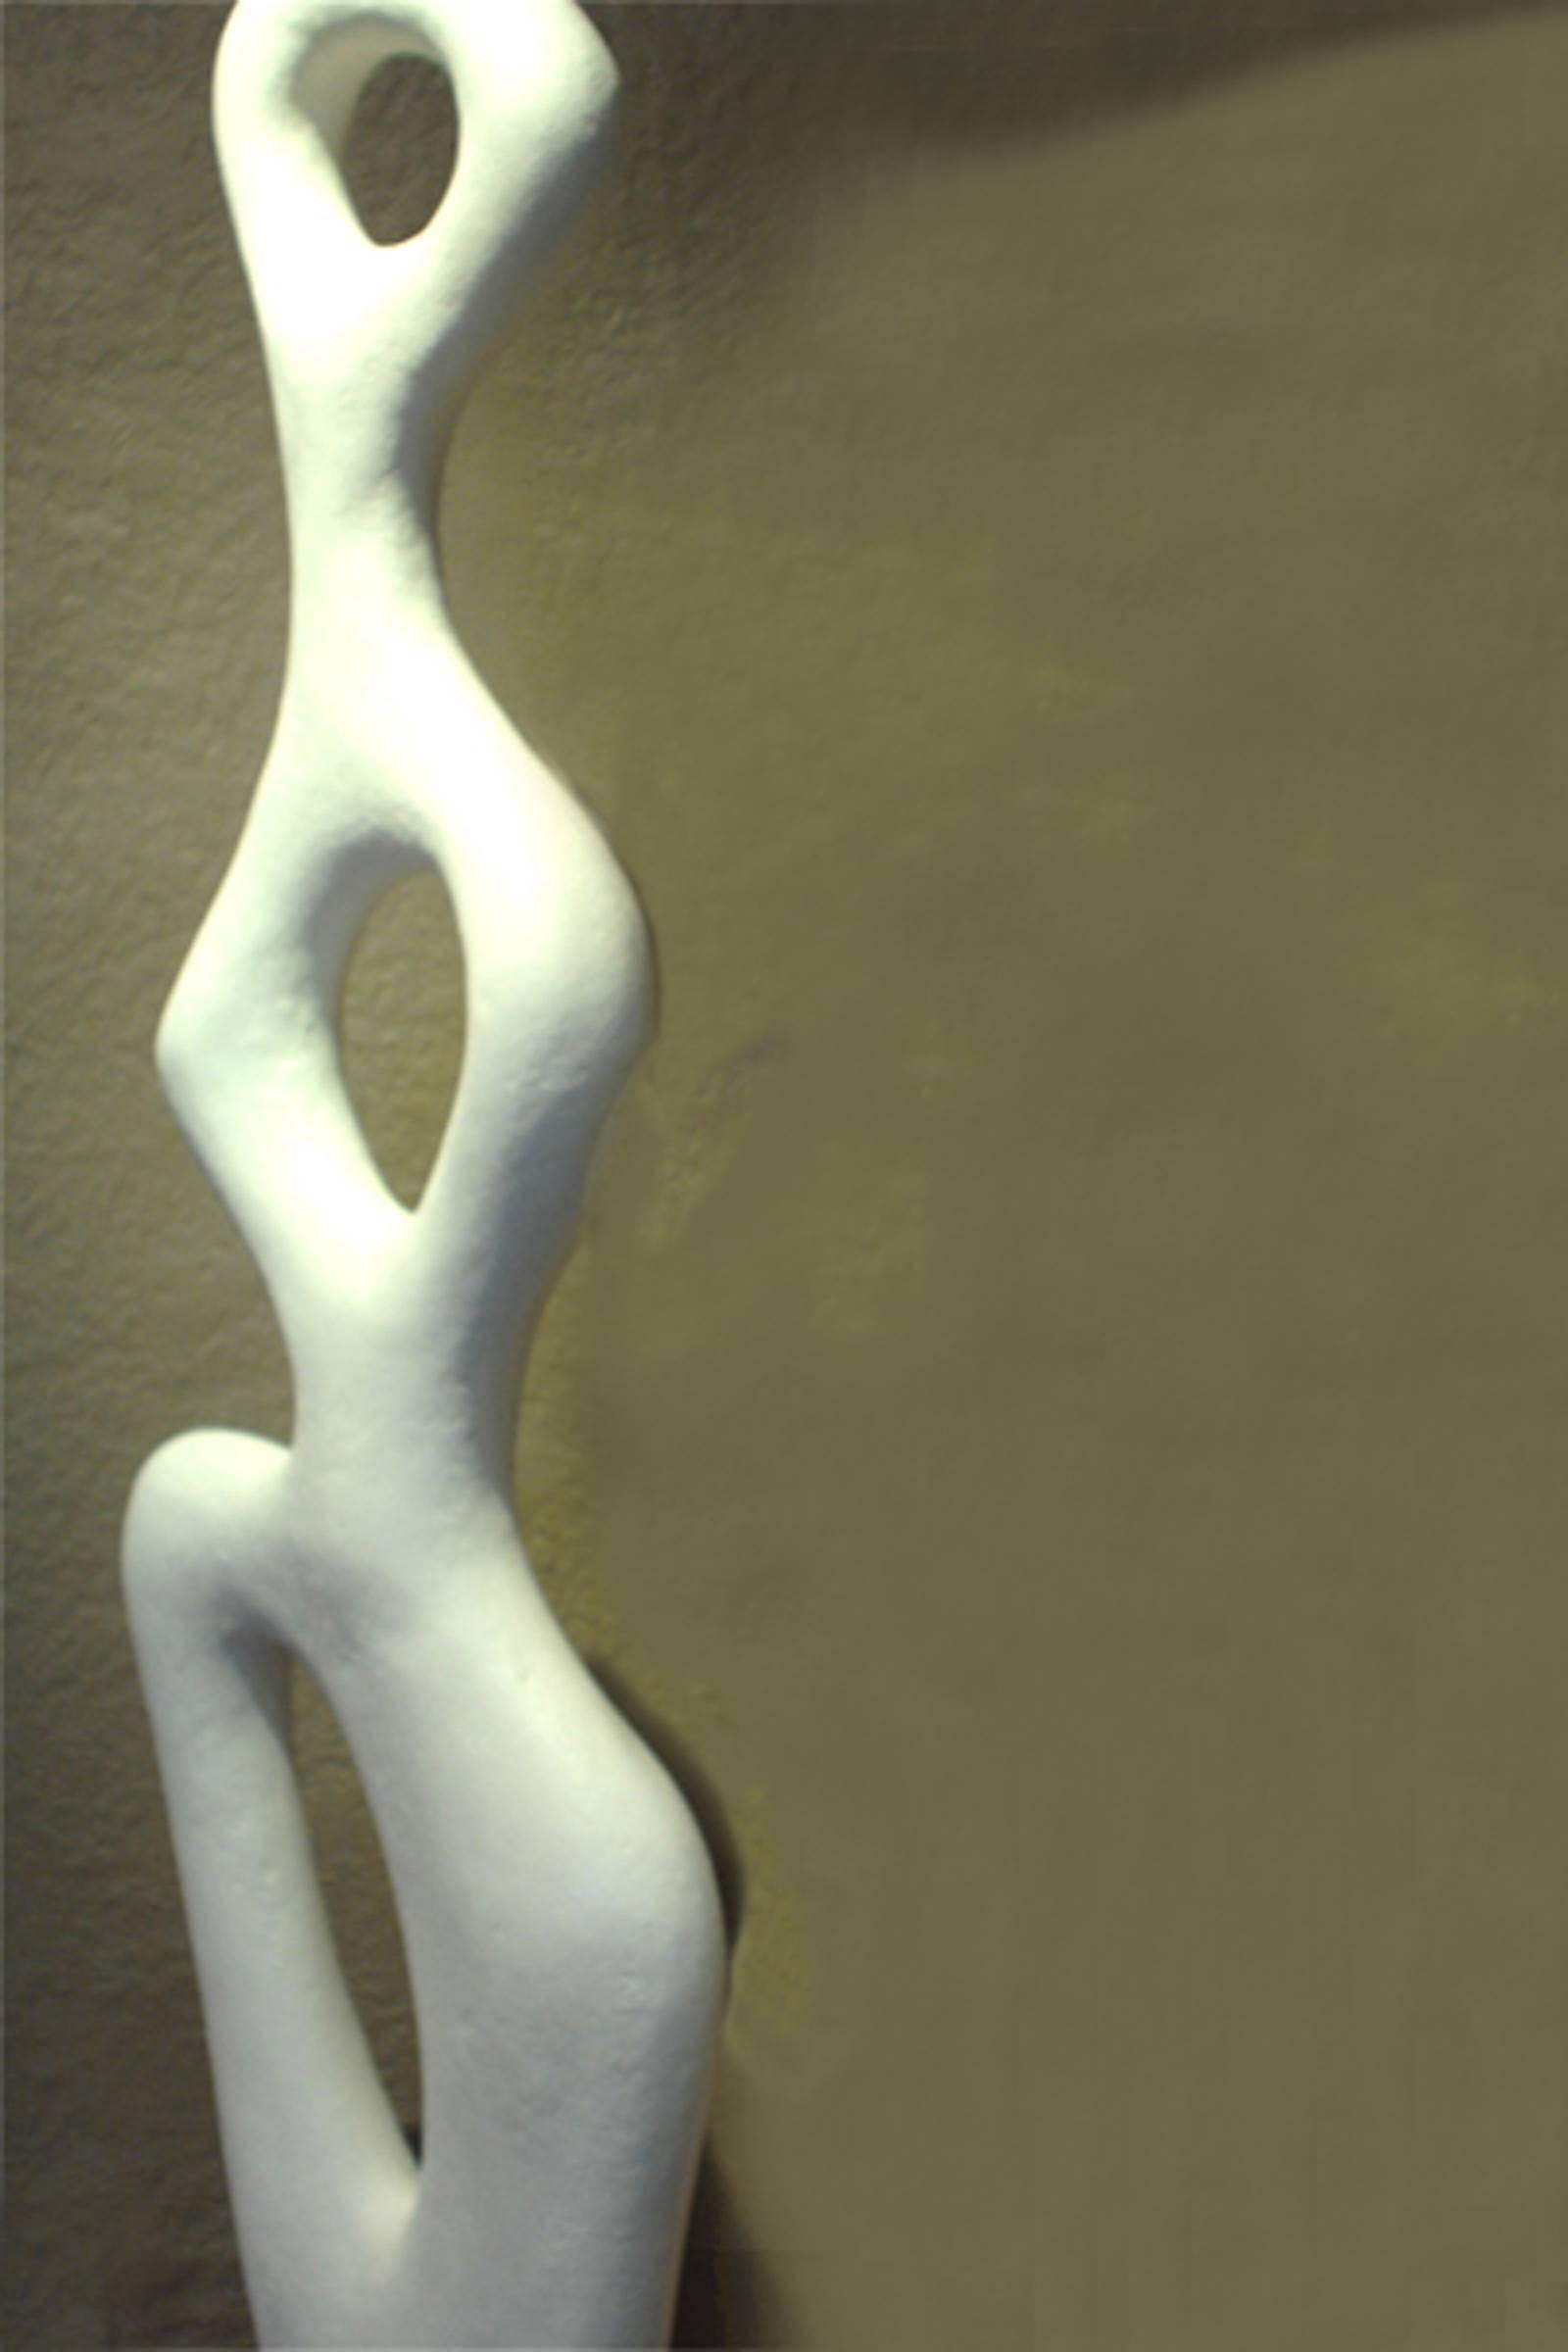 Canadian Abstract Musa Series Sculpture by Artist Birgit Piskor